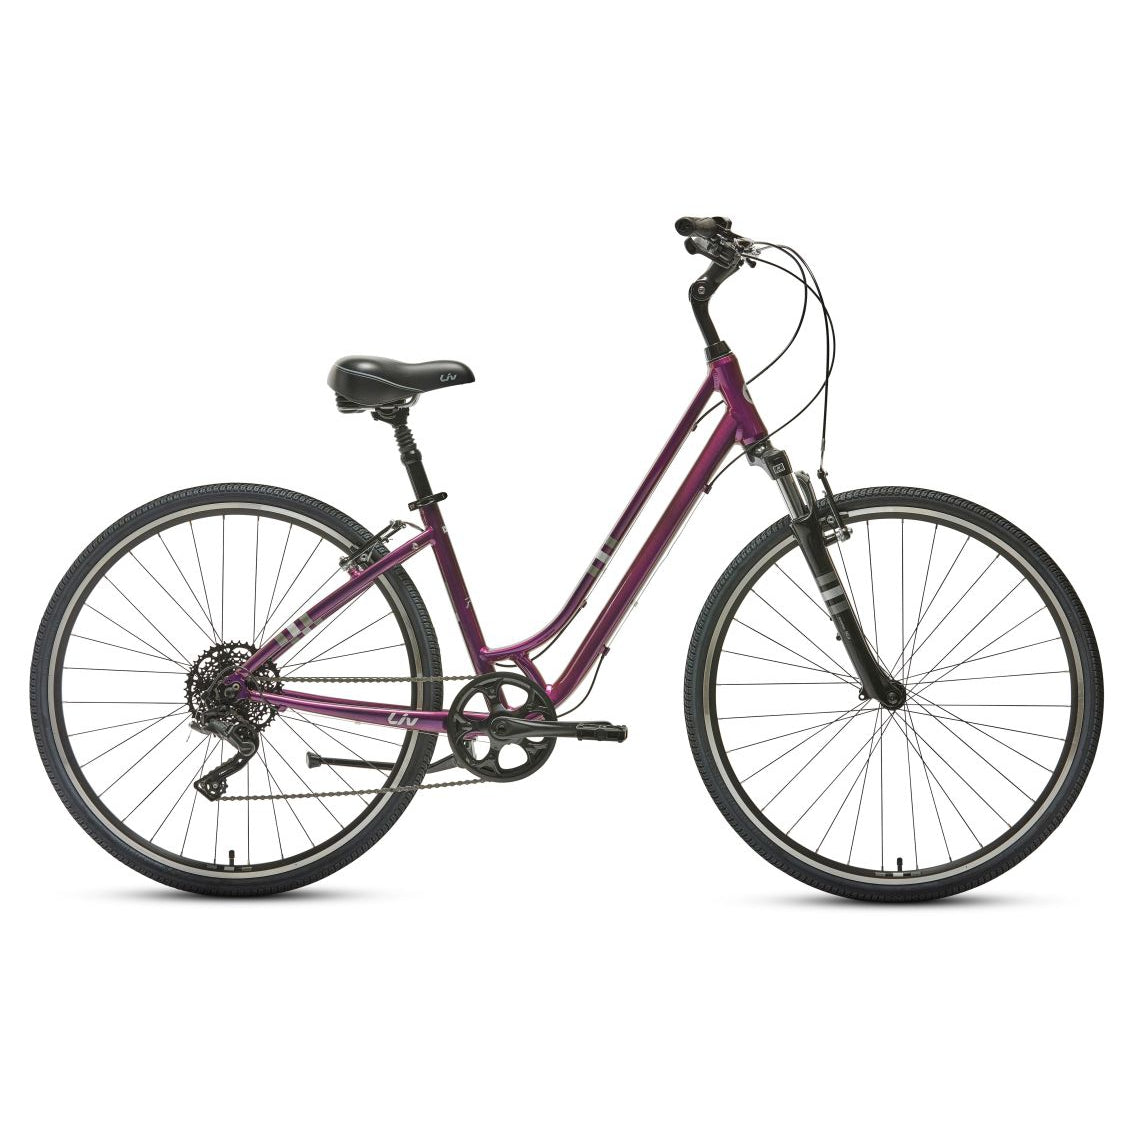 Liv Flourish FS 1 Comfort Bike - Bikes - Bicycle Warehouse